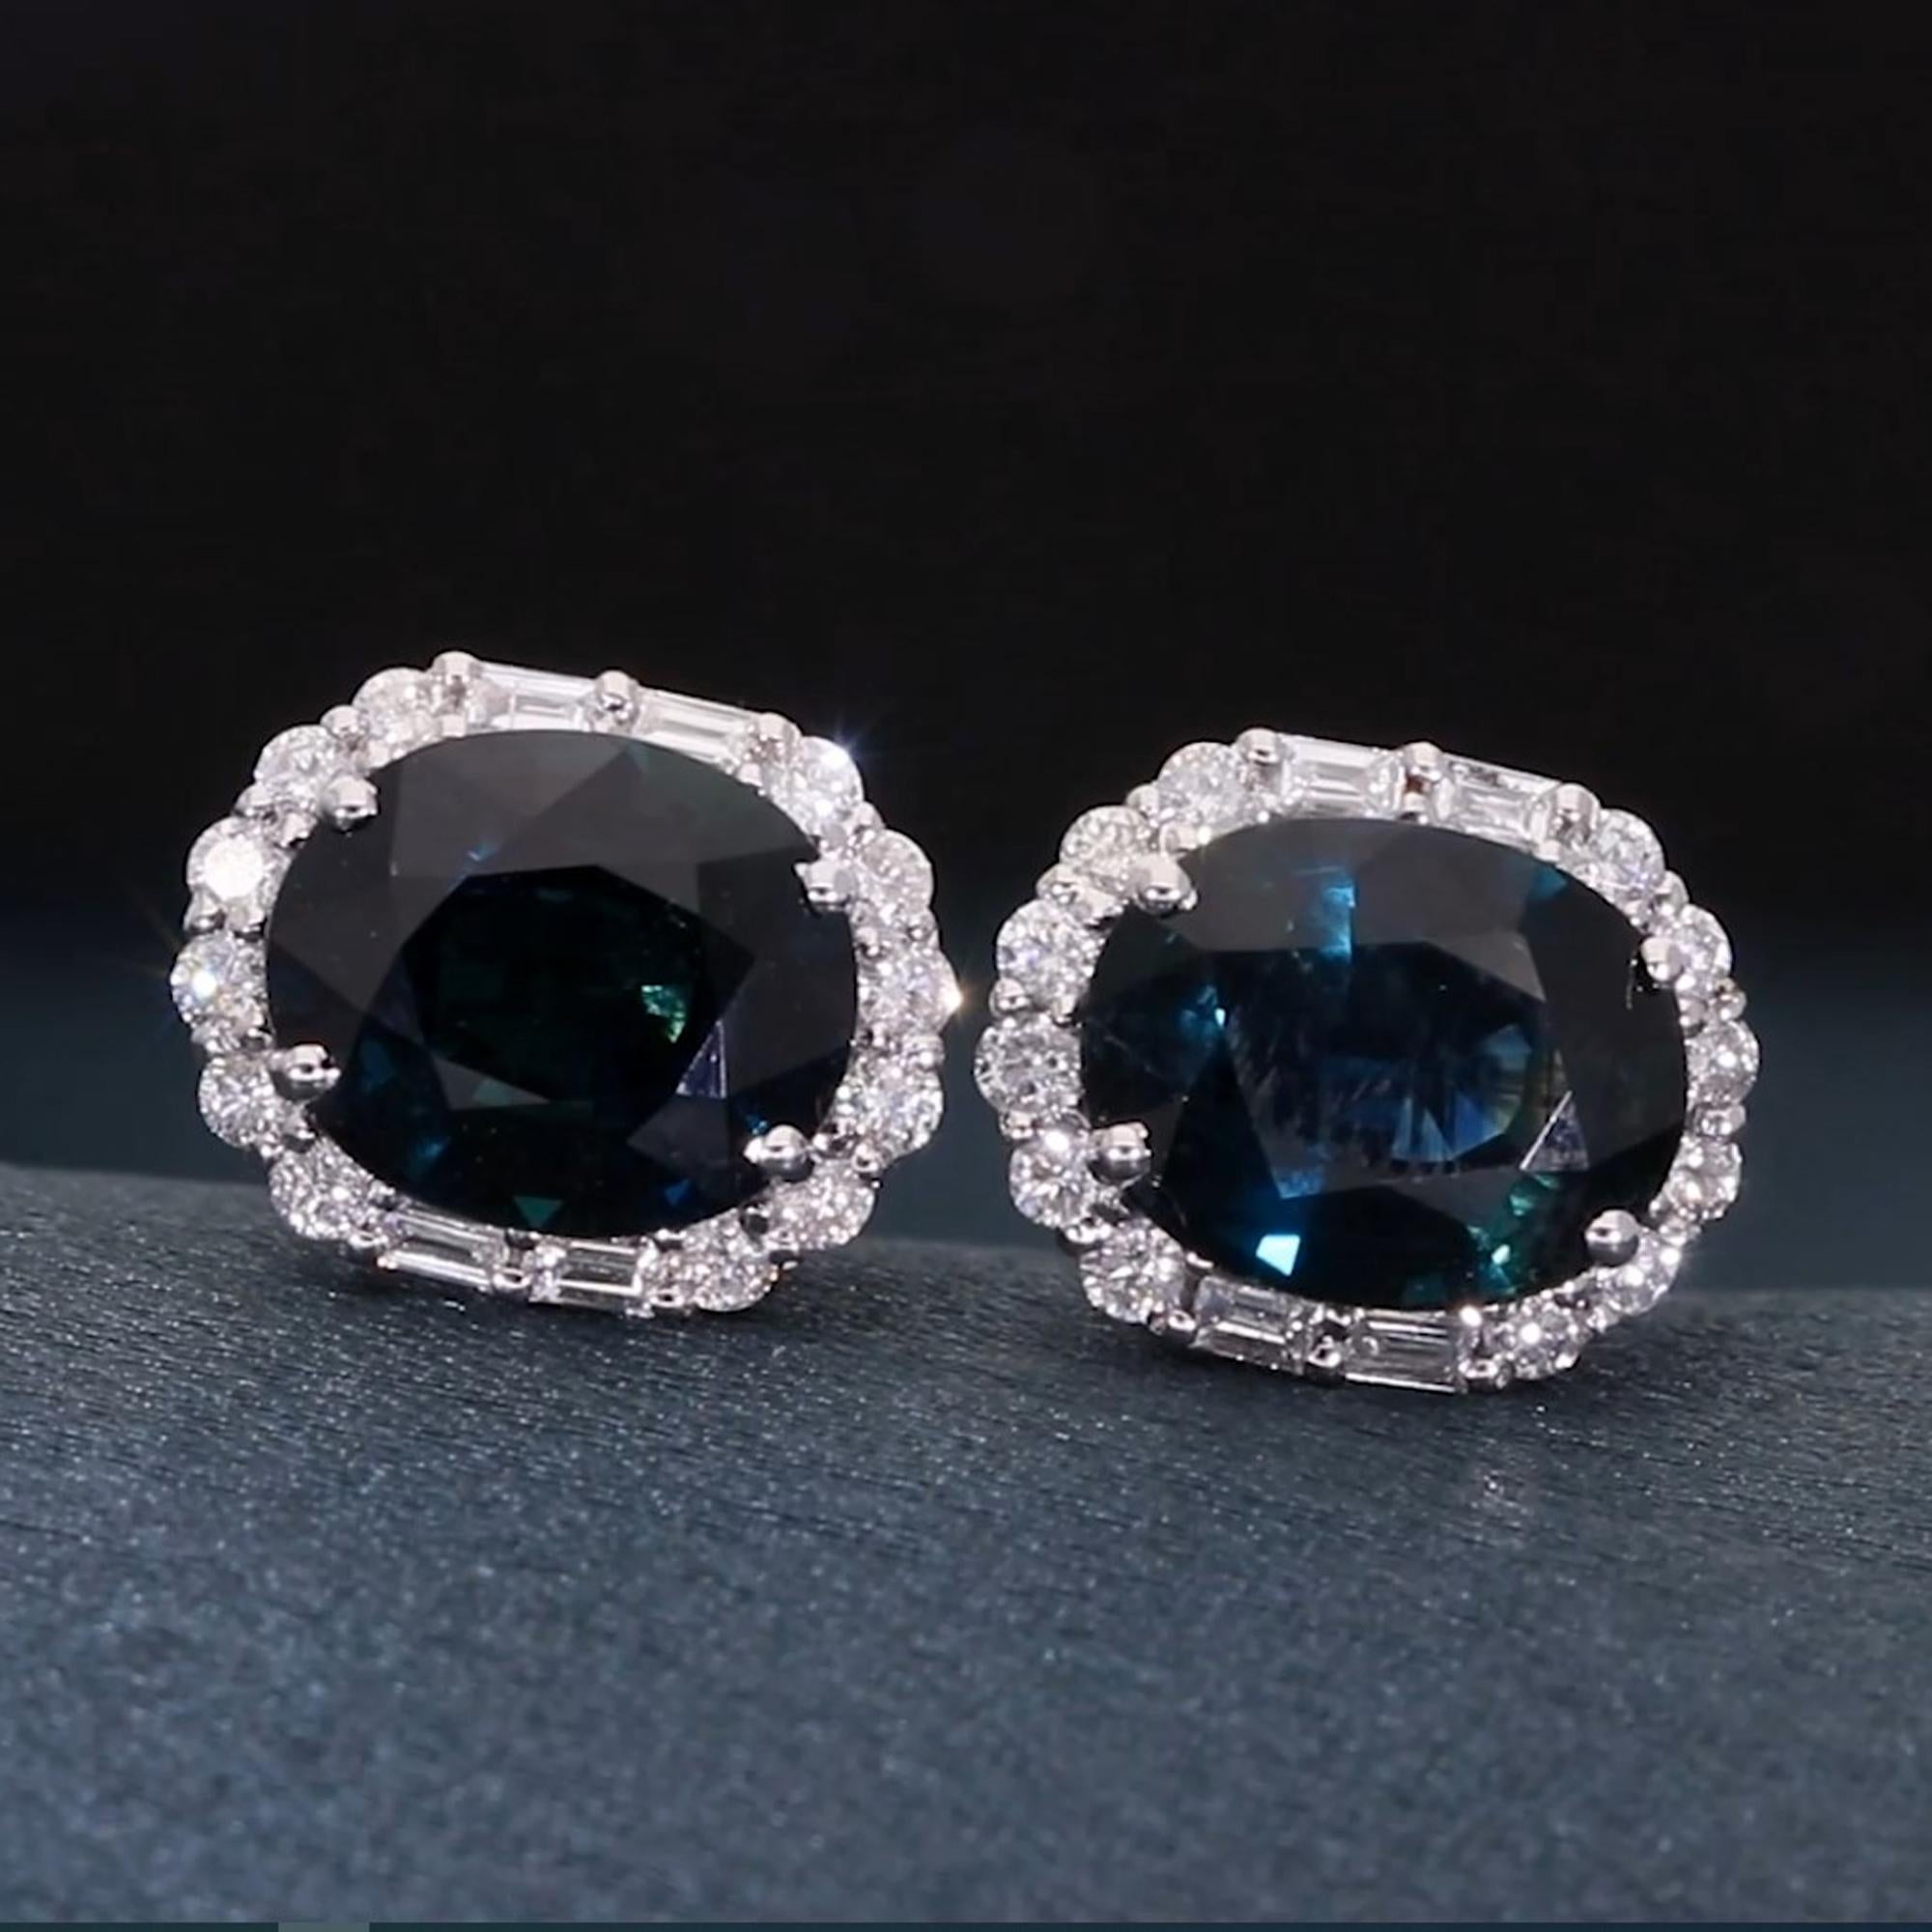 Oval Cut Blue Sapphire Gemstone Stud Earrings Baguette Diamond 18 Kt White Gold Jewelry For Sale